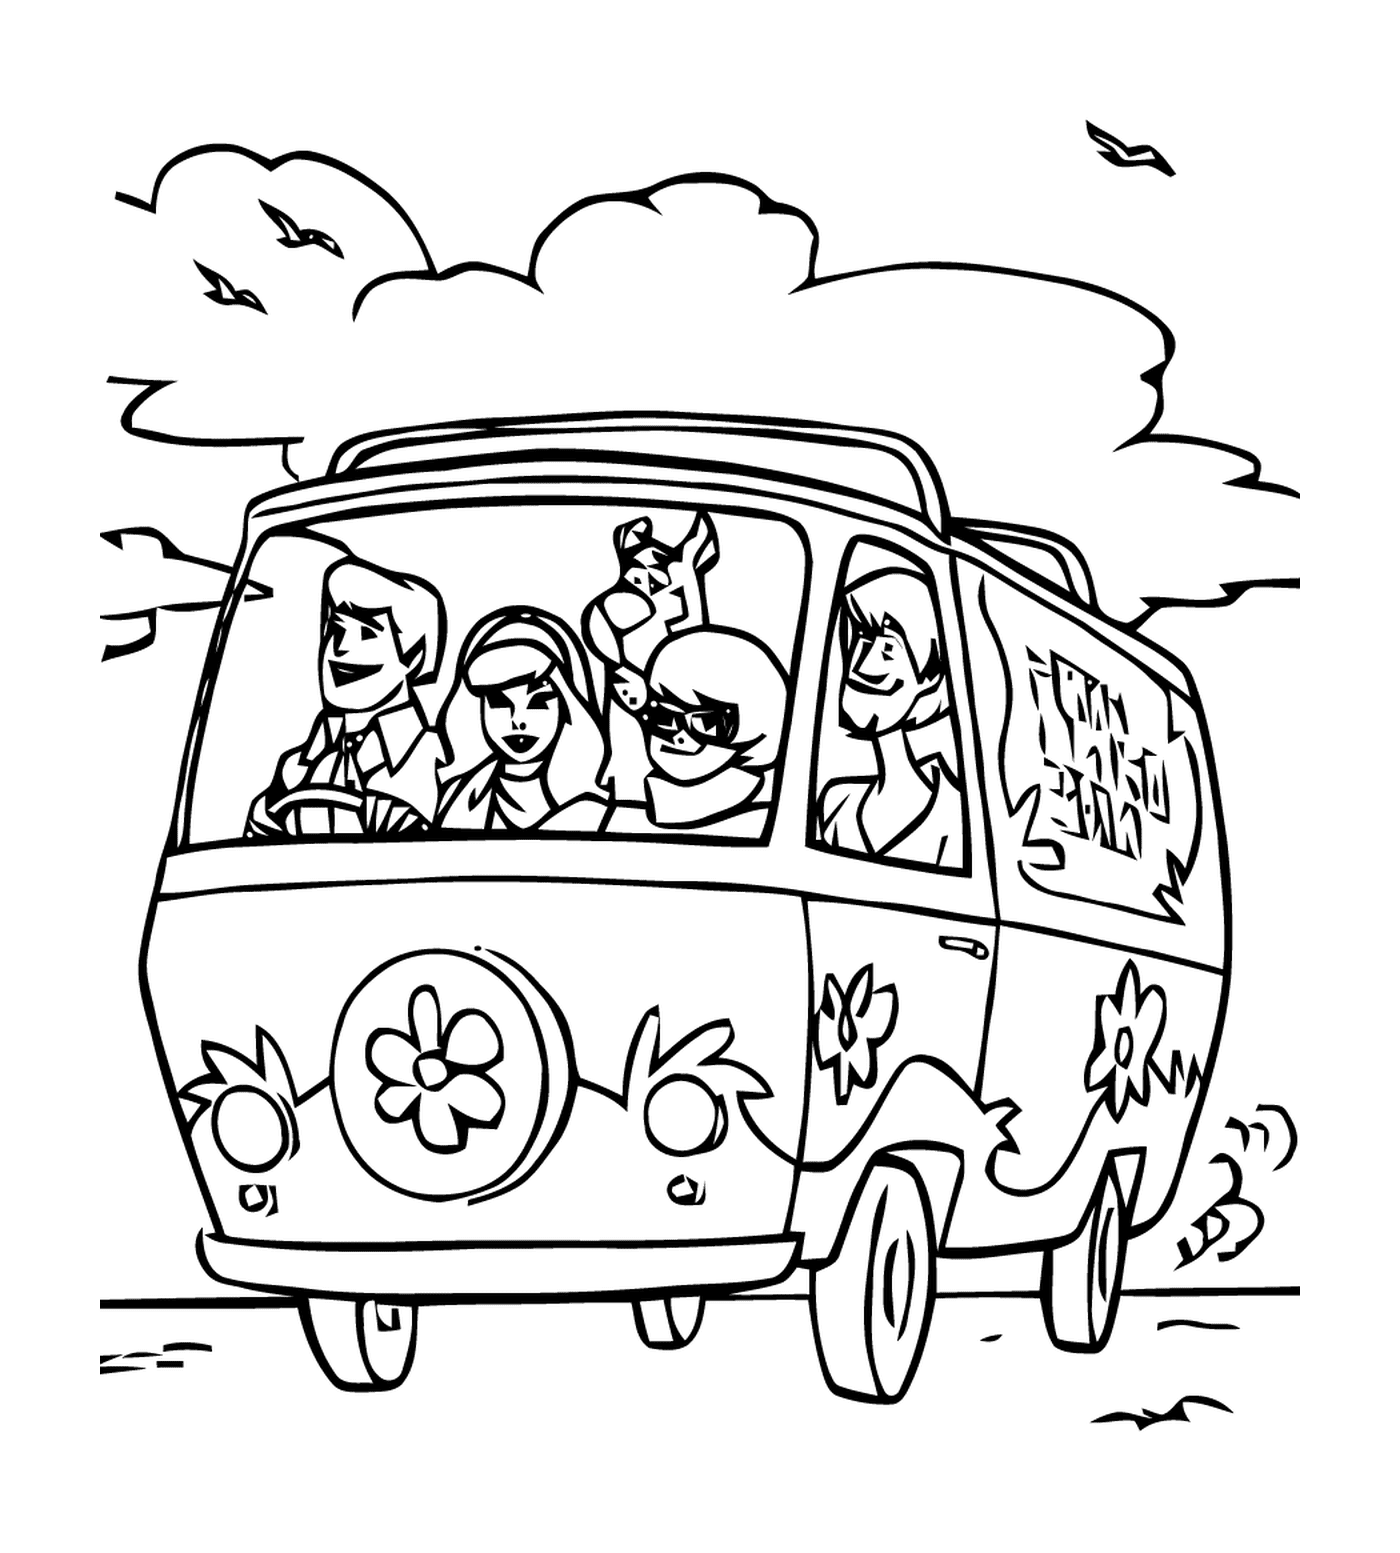  Um grupo de pessoas em um carro na estrada 